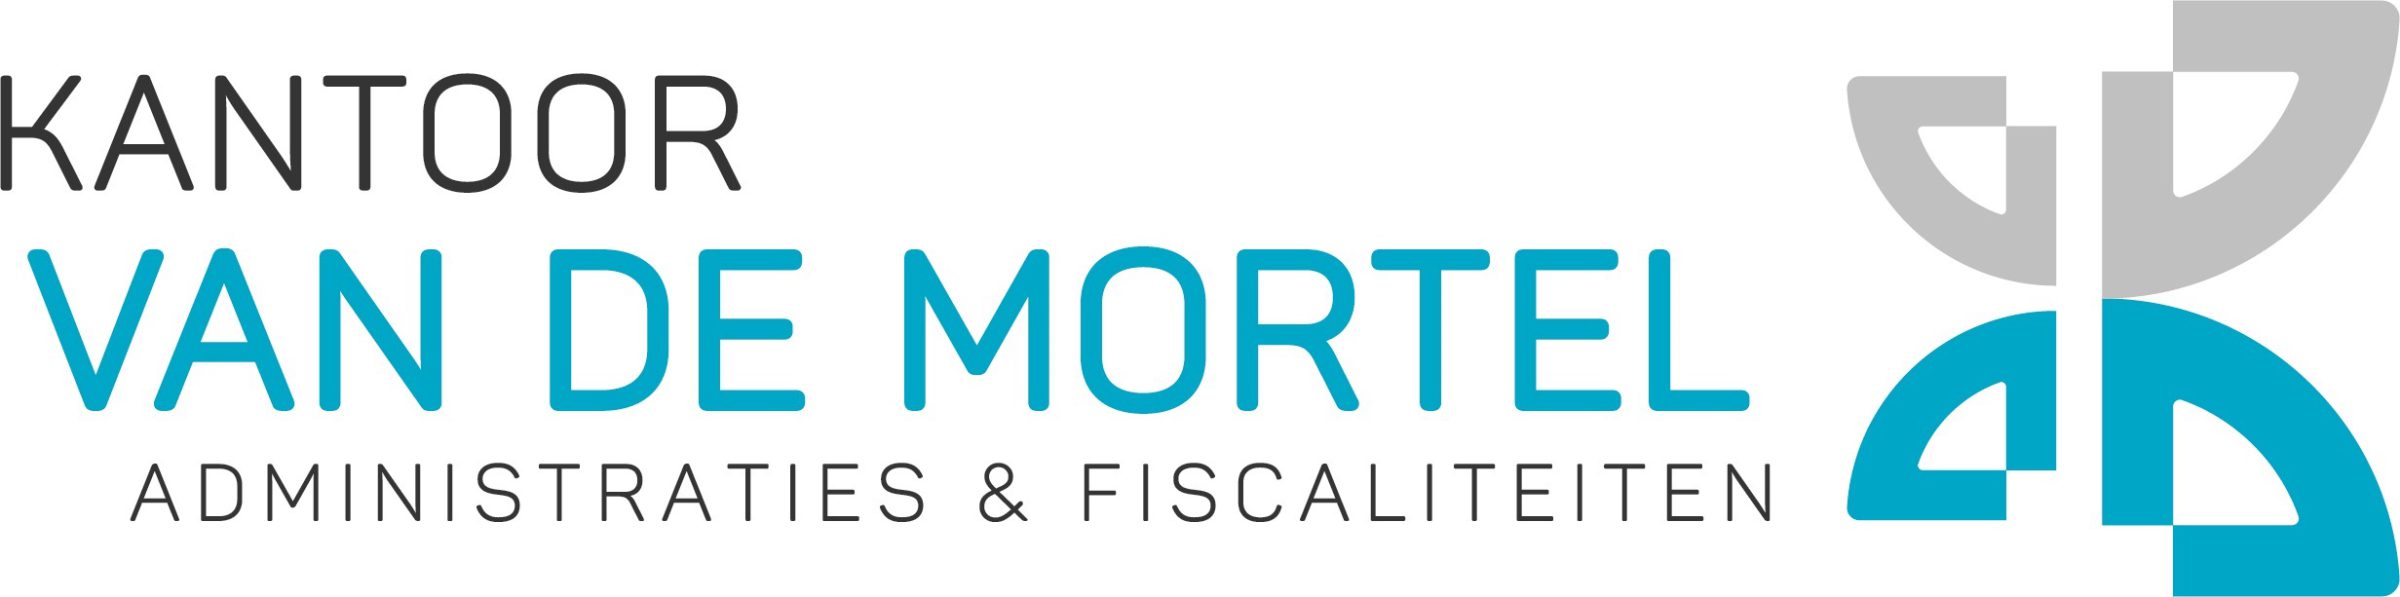 Kantoor van de Mortel, administraties & Fiscaliteiten, logo